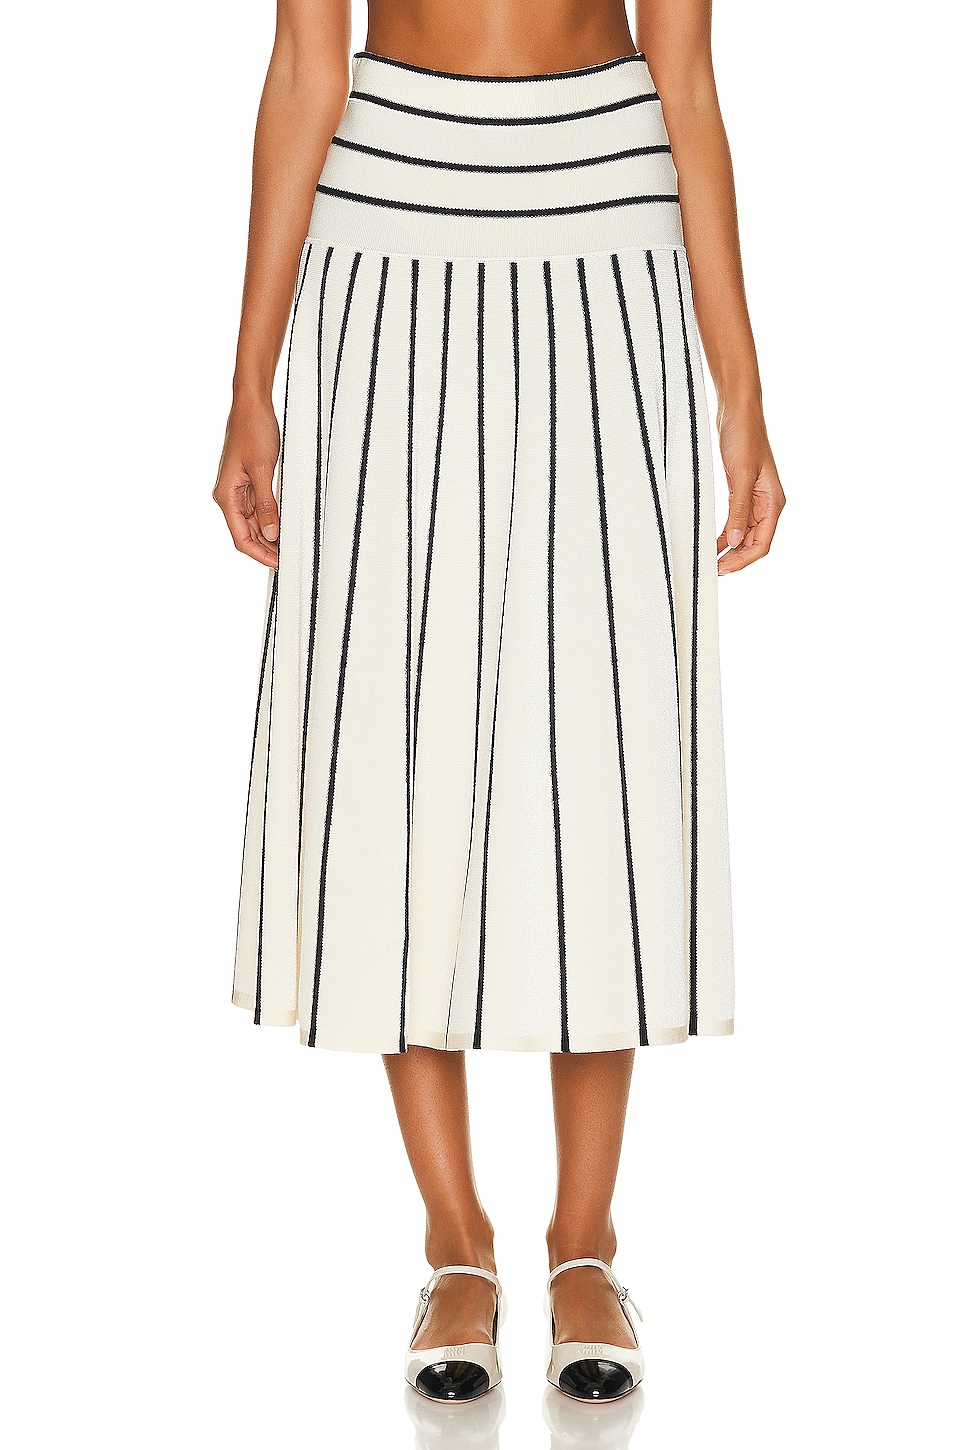 Image 1 of Zimmermann Matchmaker Knit Stripe Skirt in Cream & Black